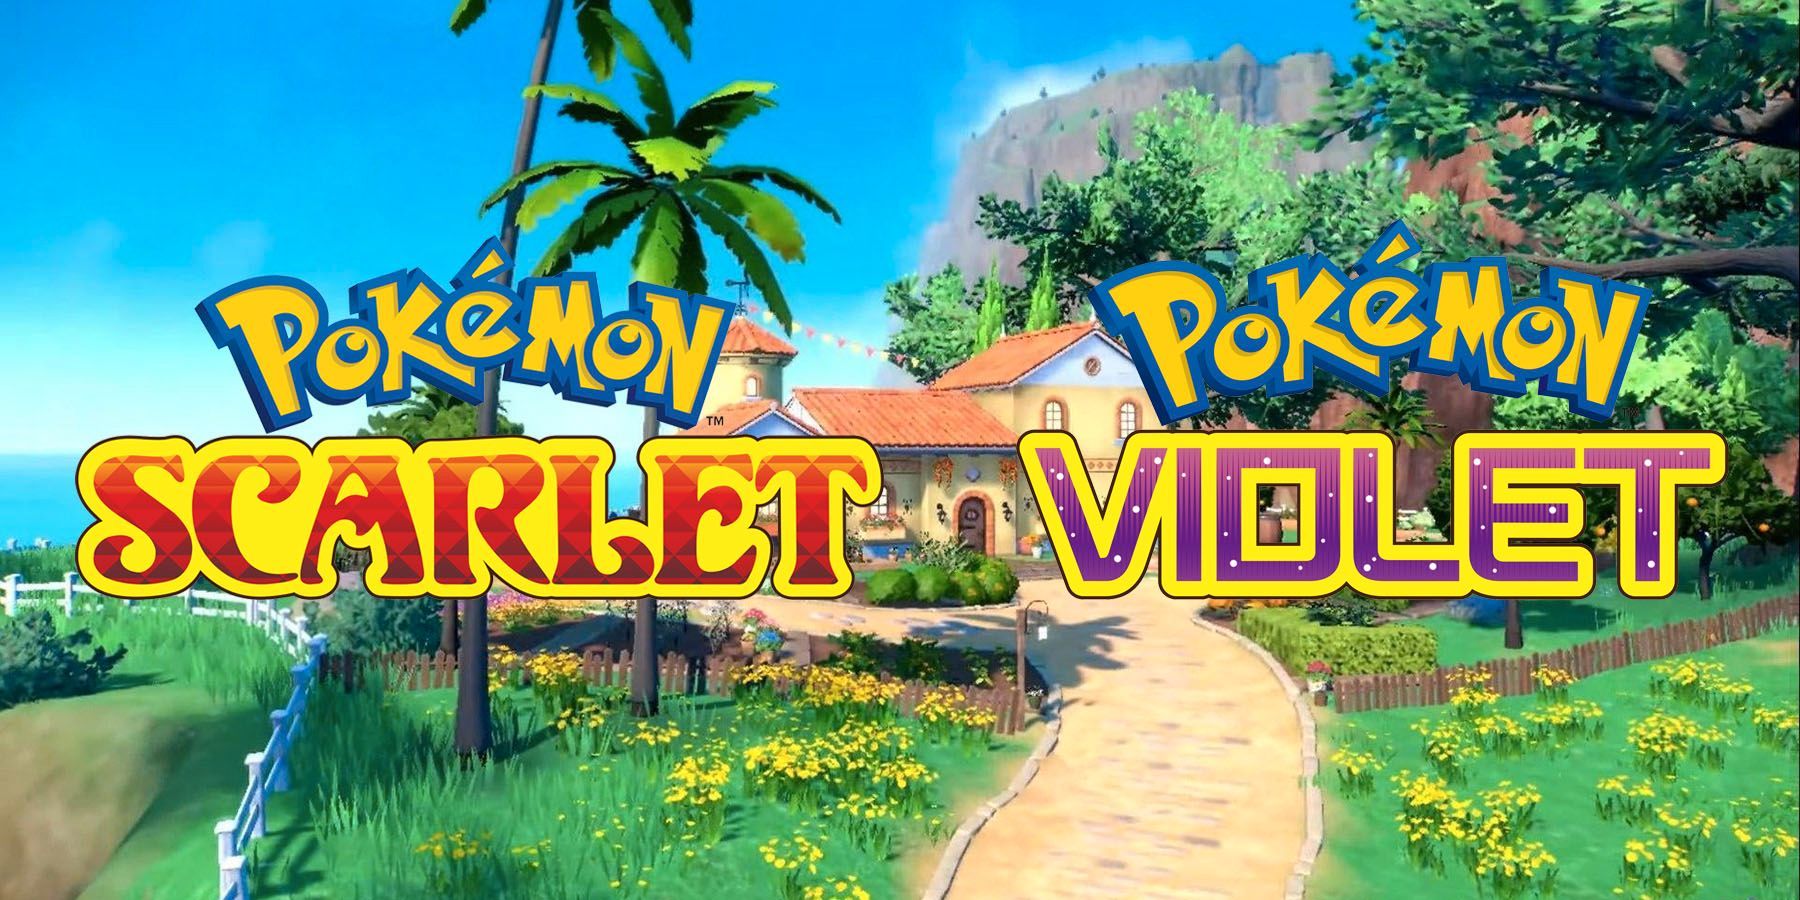 Pokémon revela las diferencias entre los atuendos de los personajes escarlata y violeta